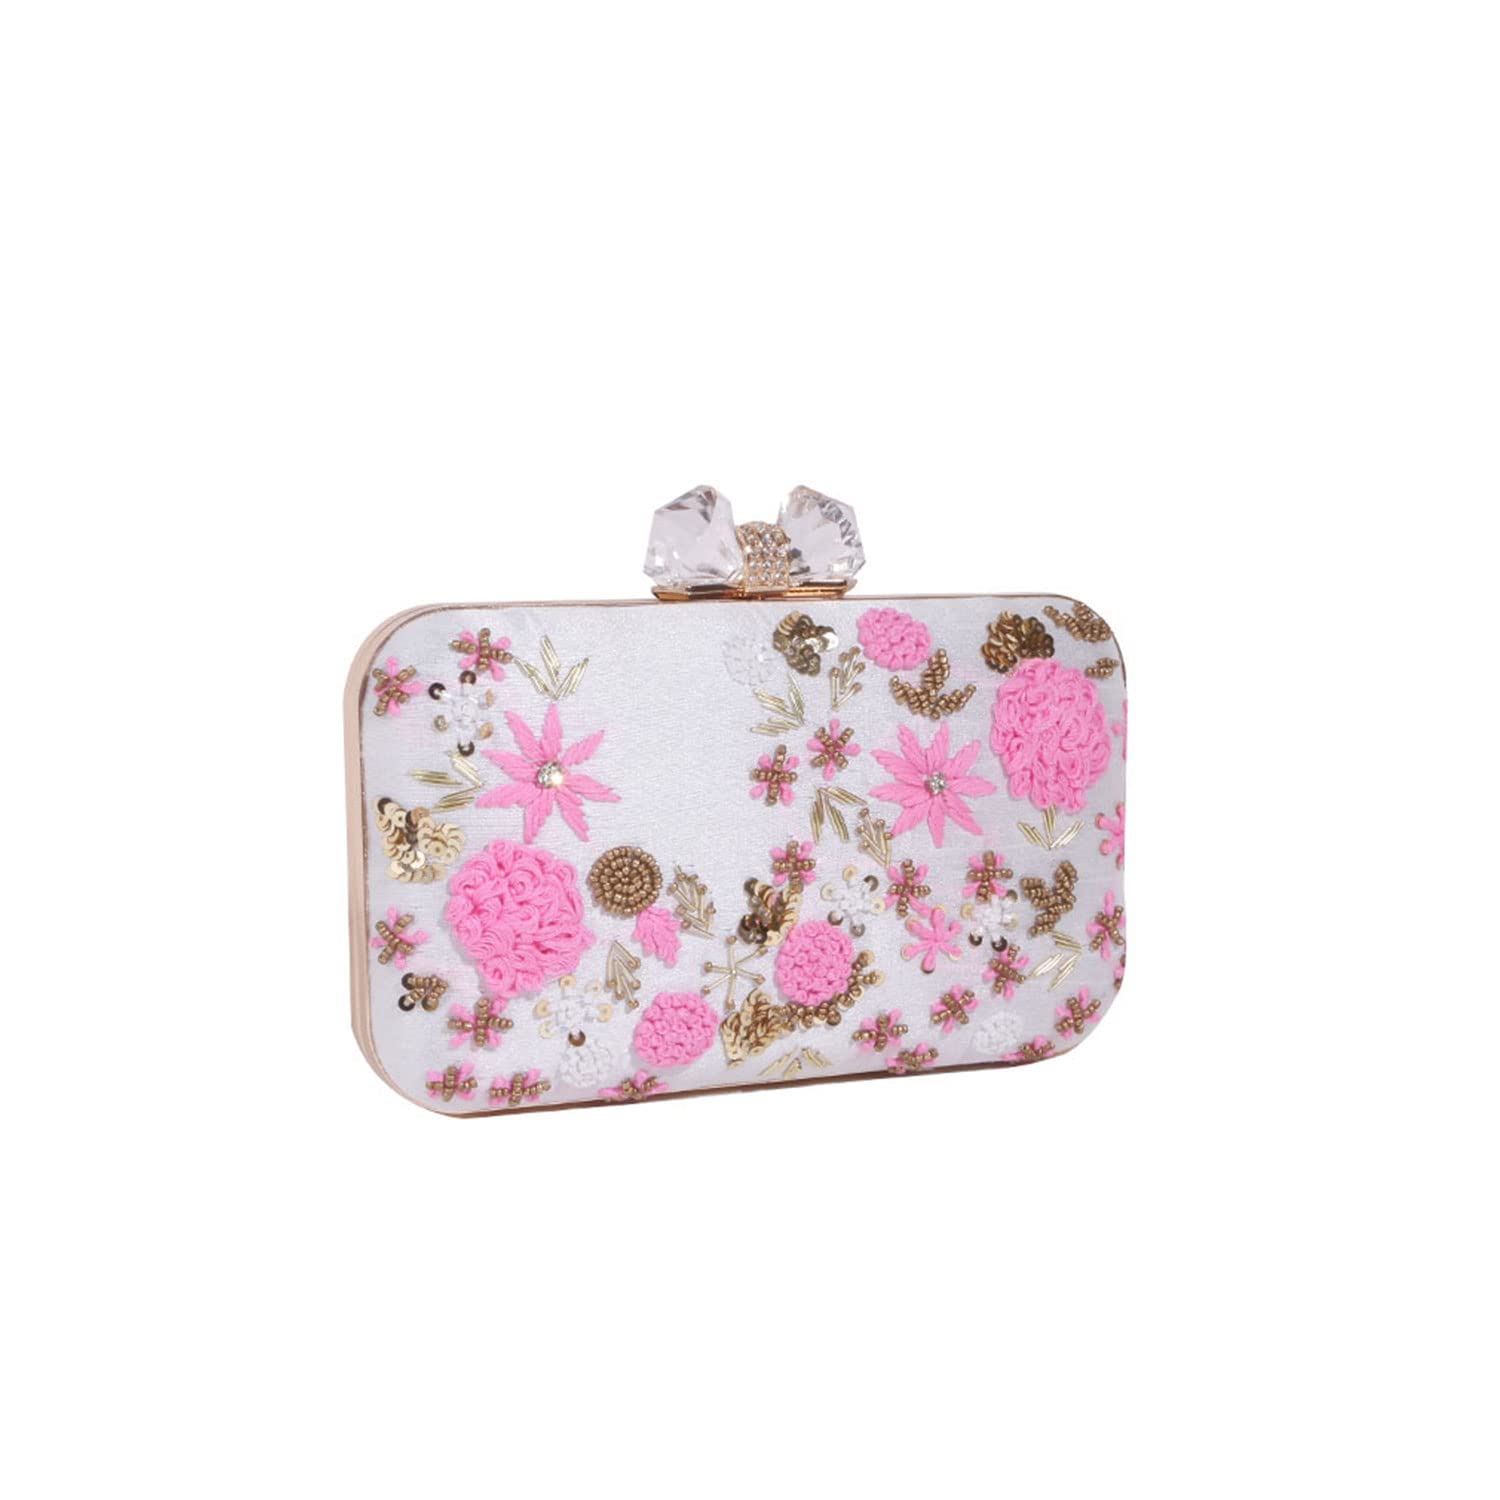 Betsey Johnson I Want Candy Purse - Pink Handbag White Hearts Black Bow |  eBay